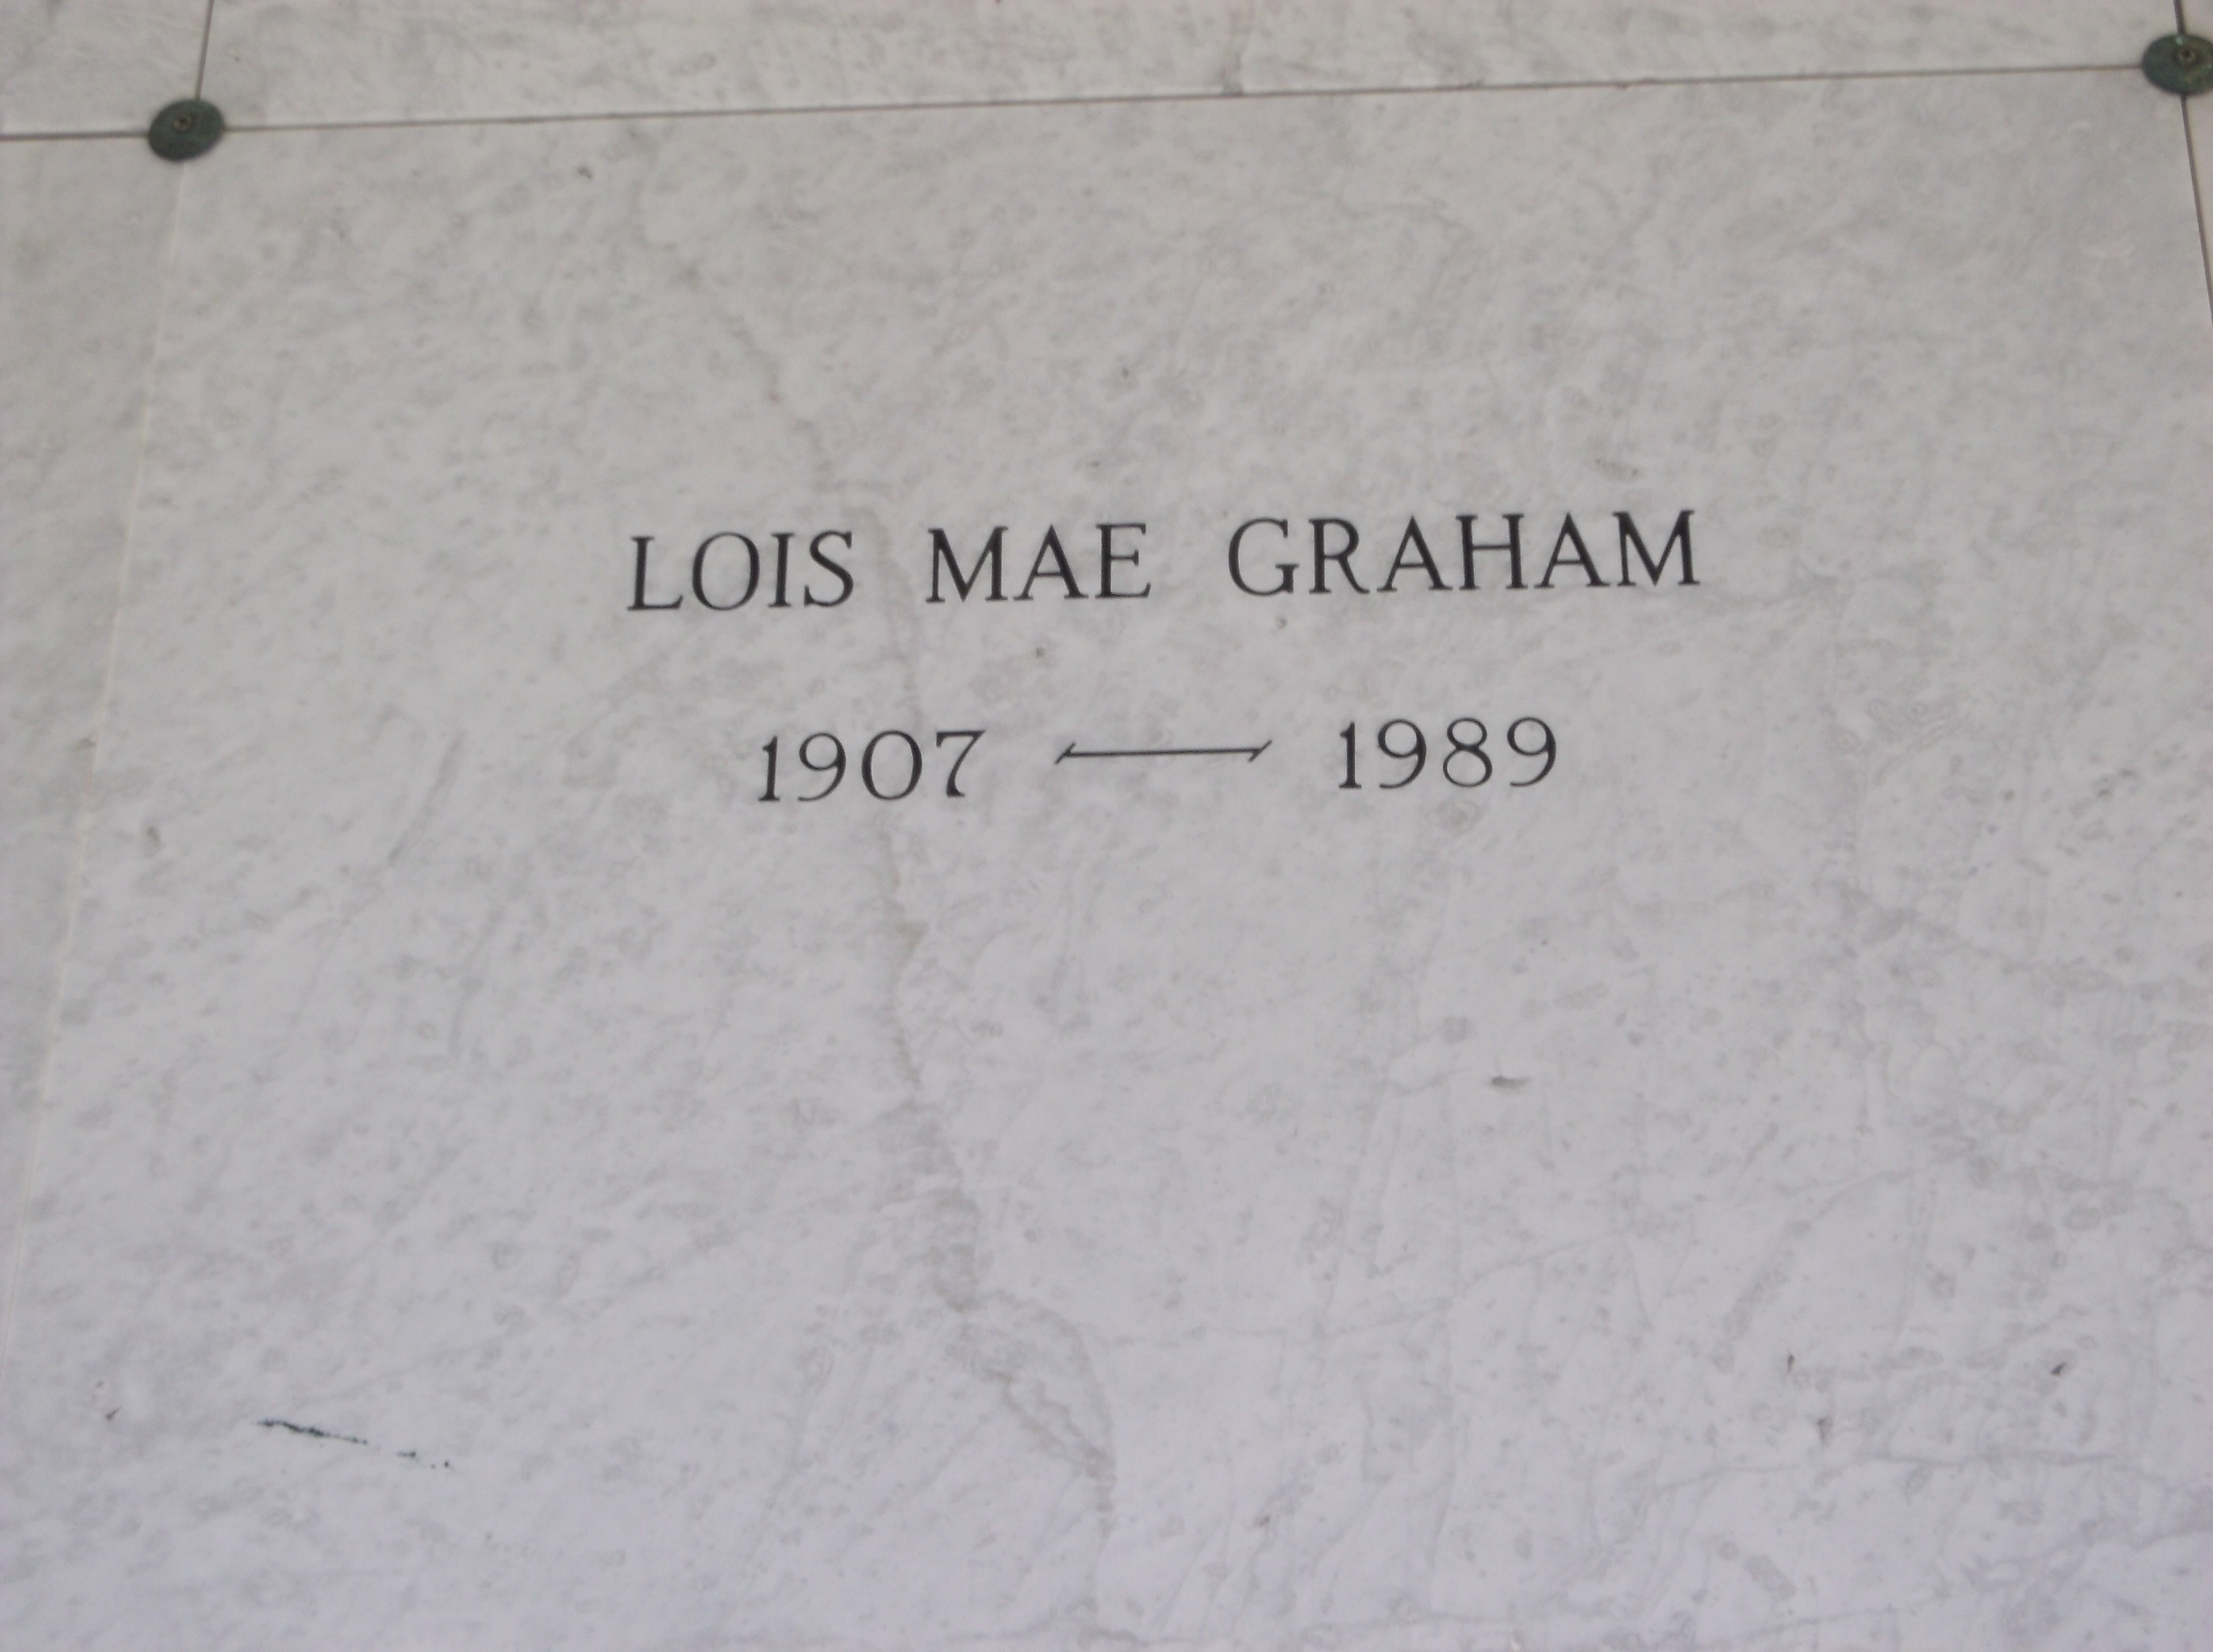 Lois Mae Graham